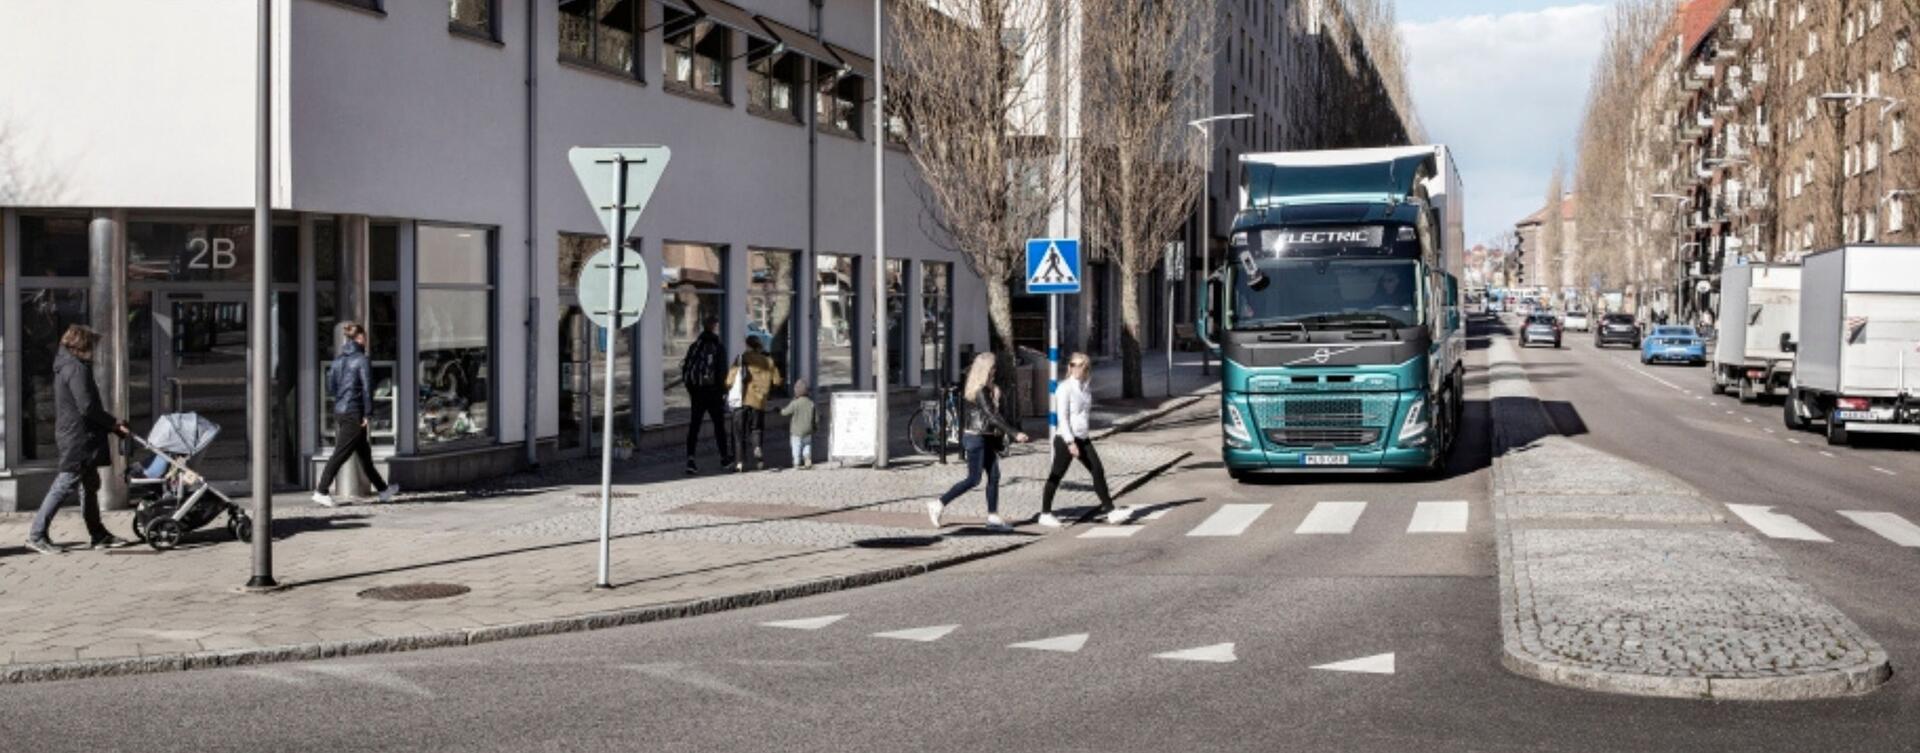 Akoestisch waarschuwingssysteem bij lage snelheid voor elektrische Volvo Trucks